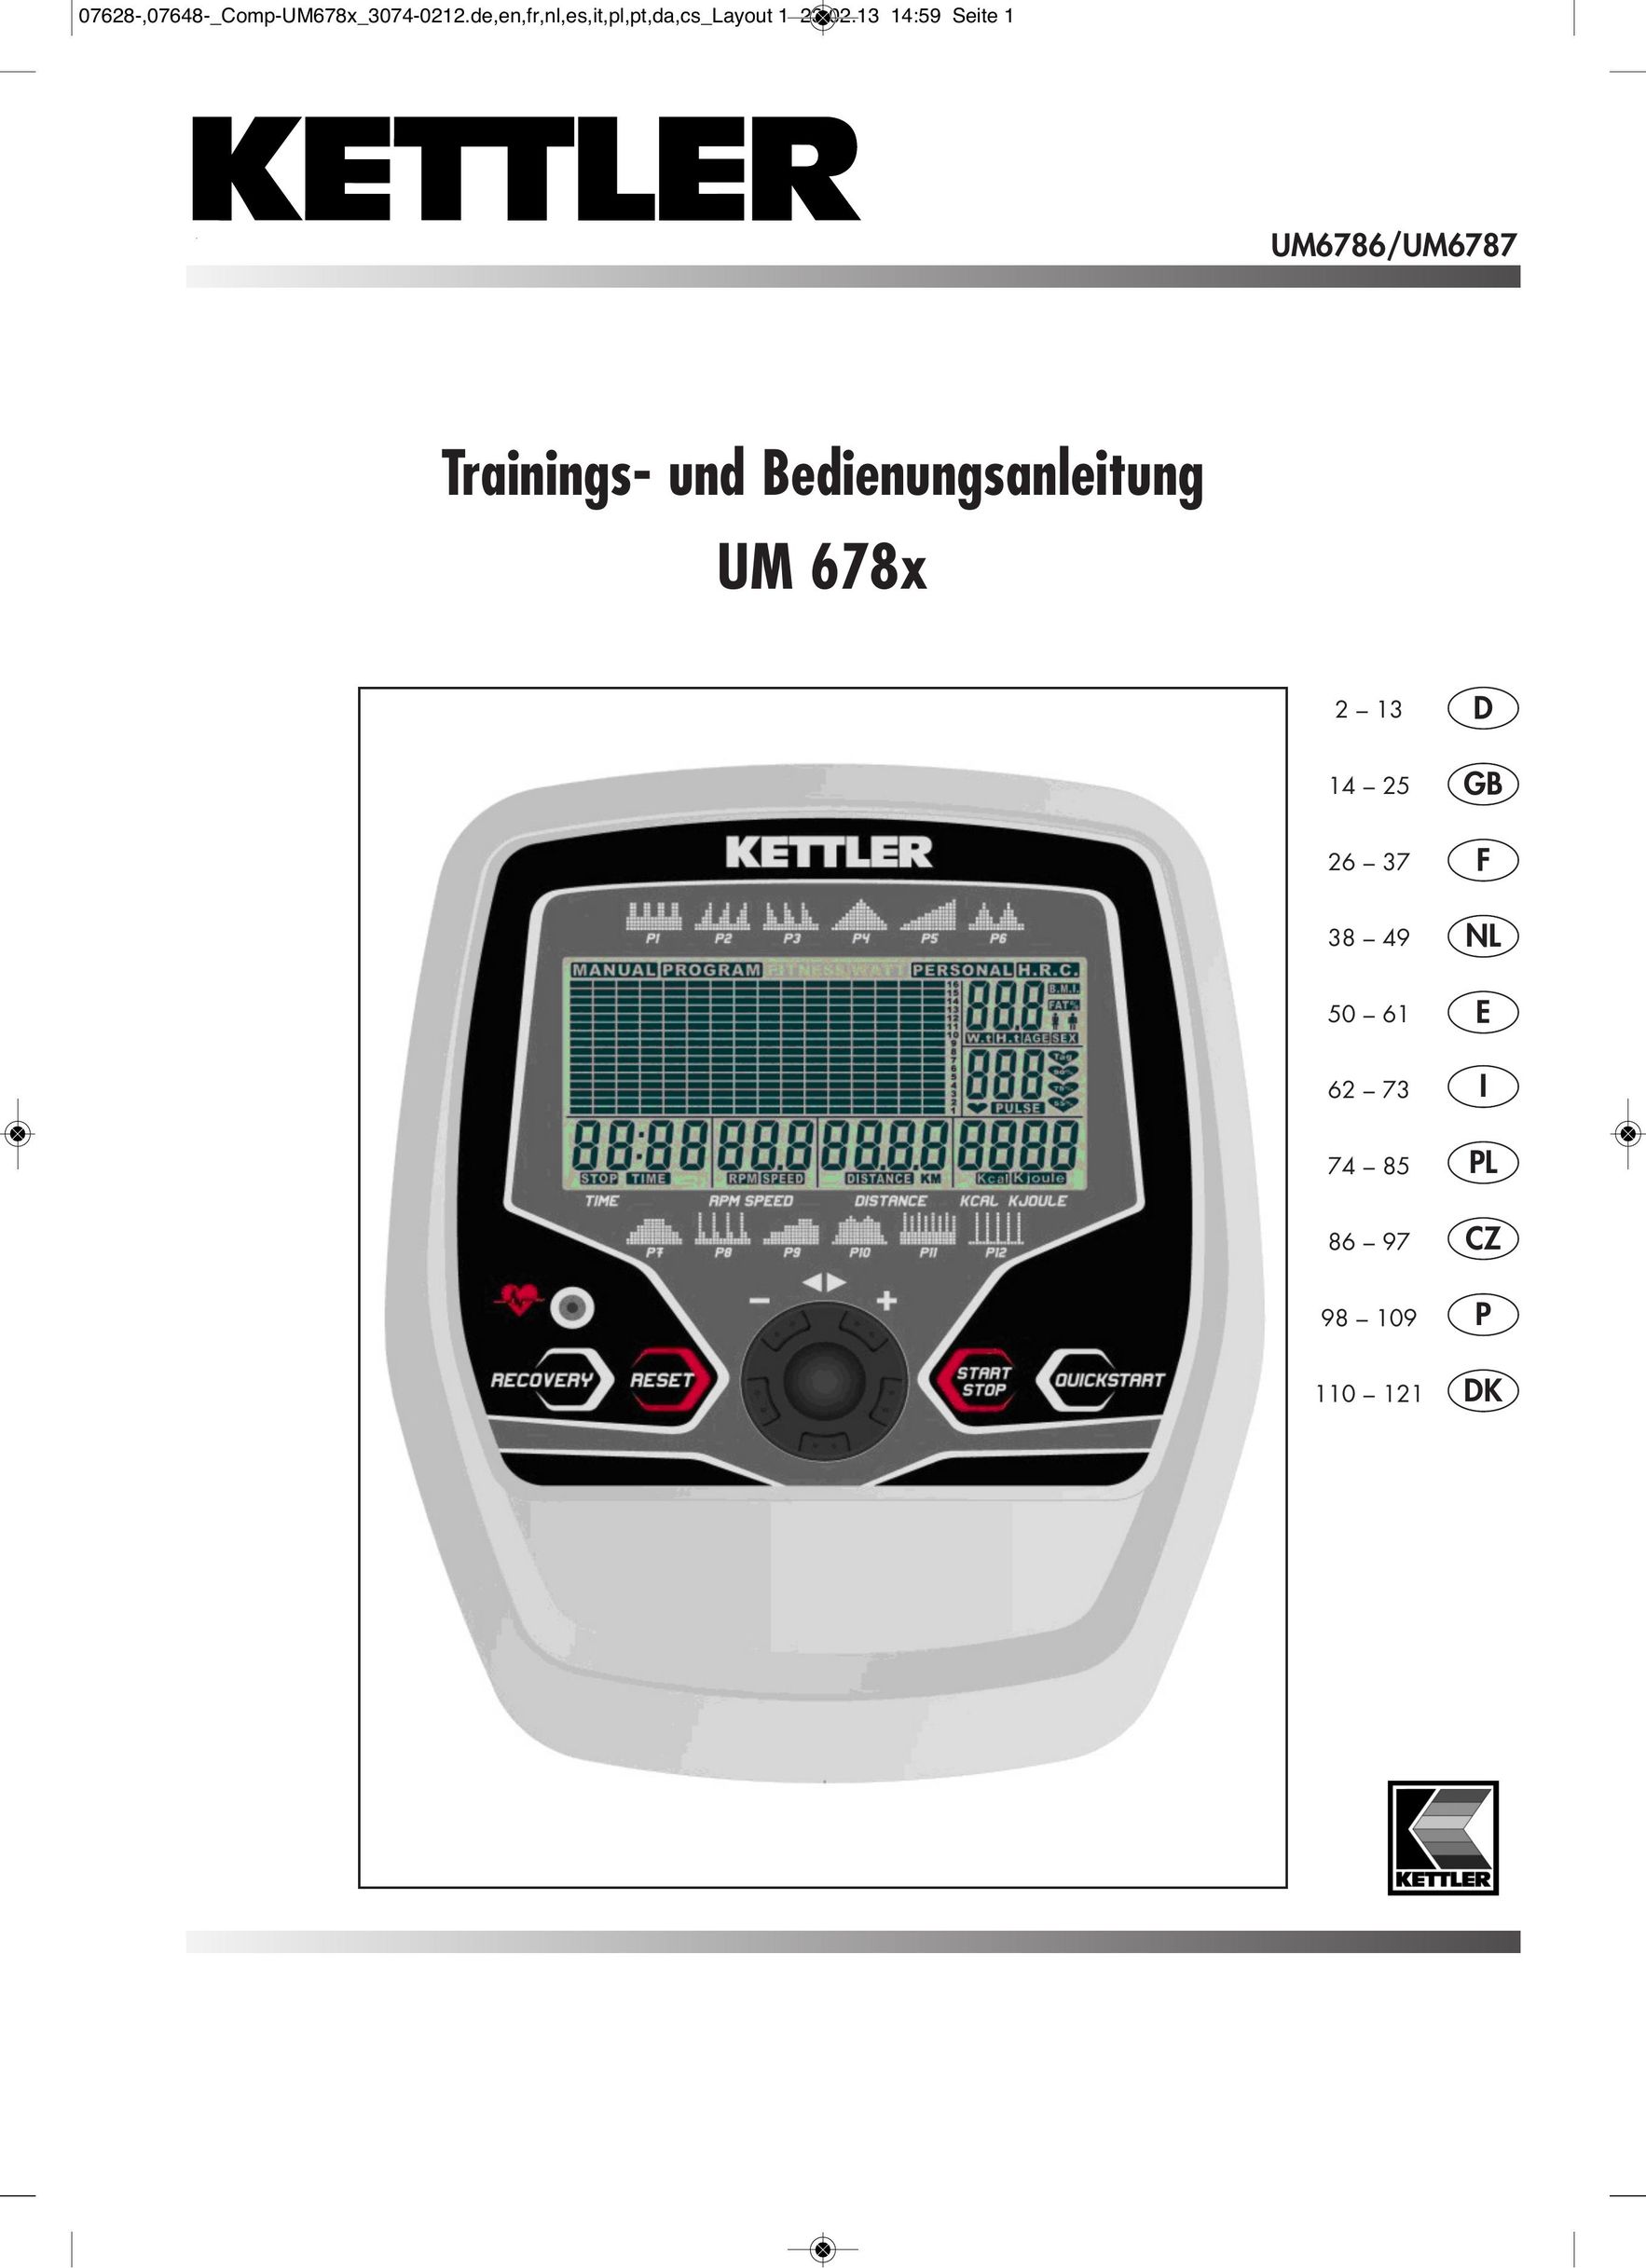 Kettler UM6787 Fitness Equipment User Manual